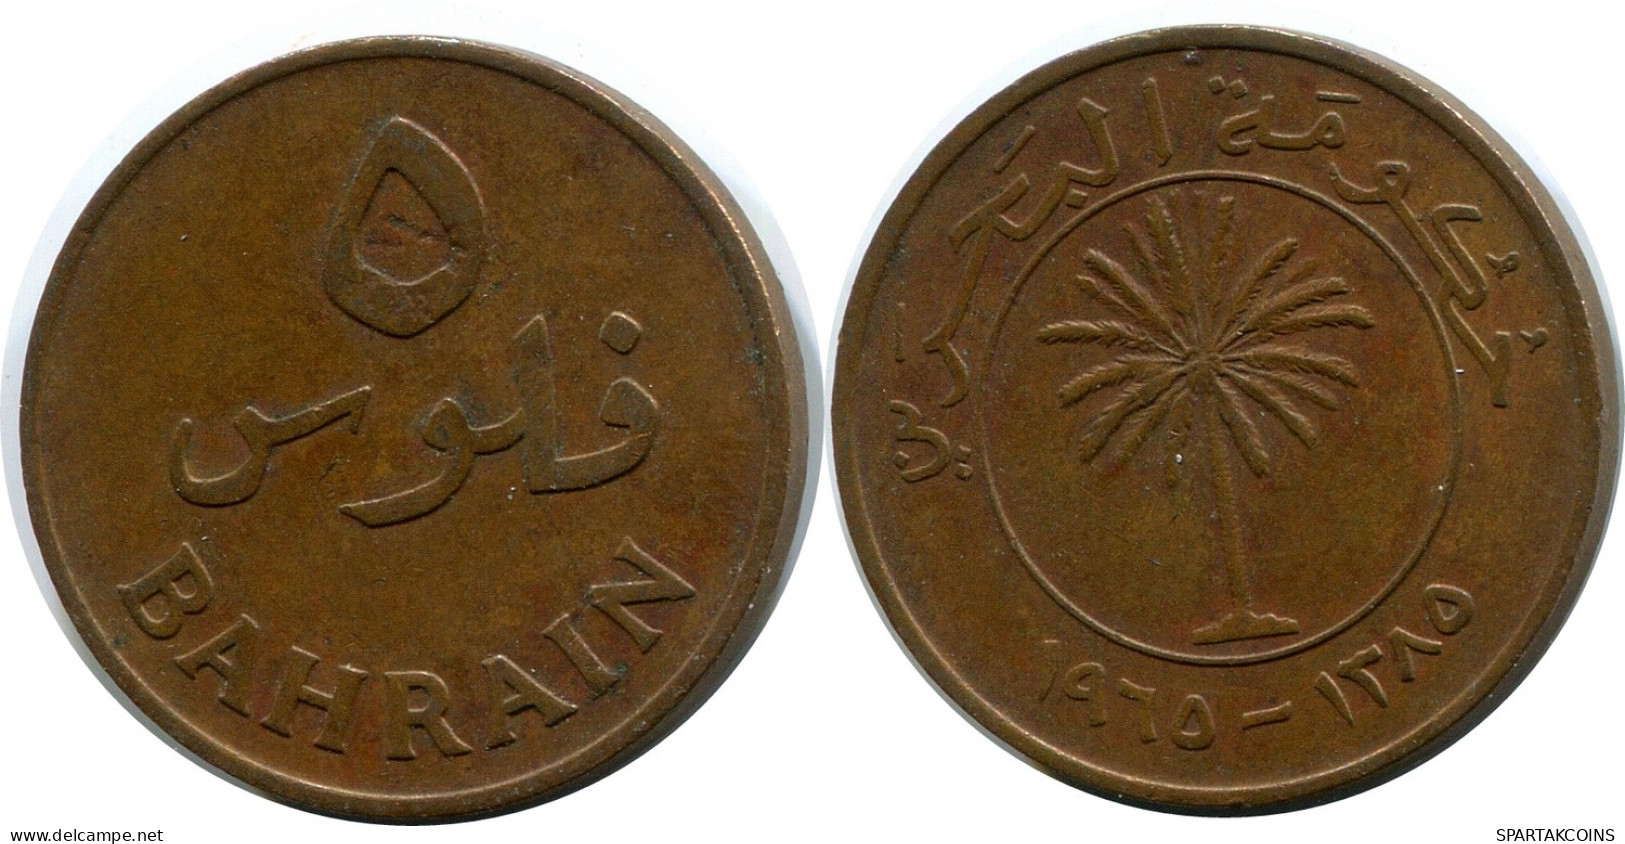 5 FILS 1965 BAHRAIN Islamic Coin #AK179.U - Bahrain